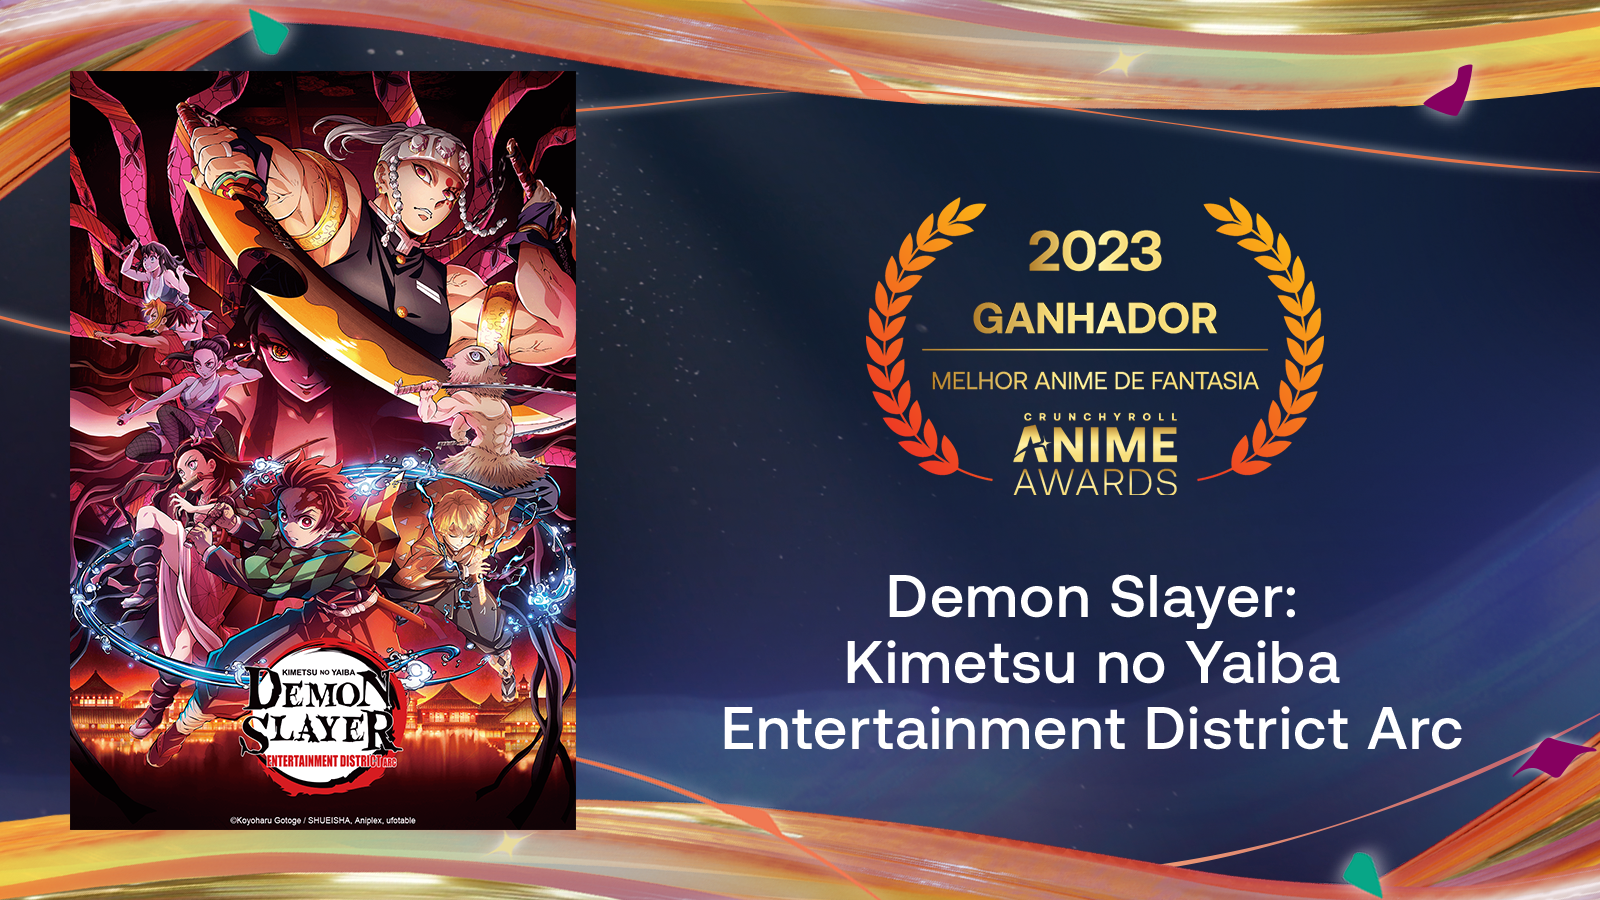 Crunchyroll Anime Awards: Votação para edição de 2023 está aberta ao  público